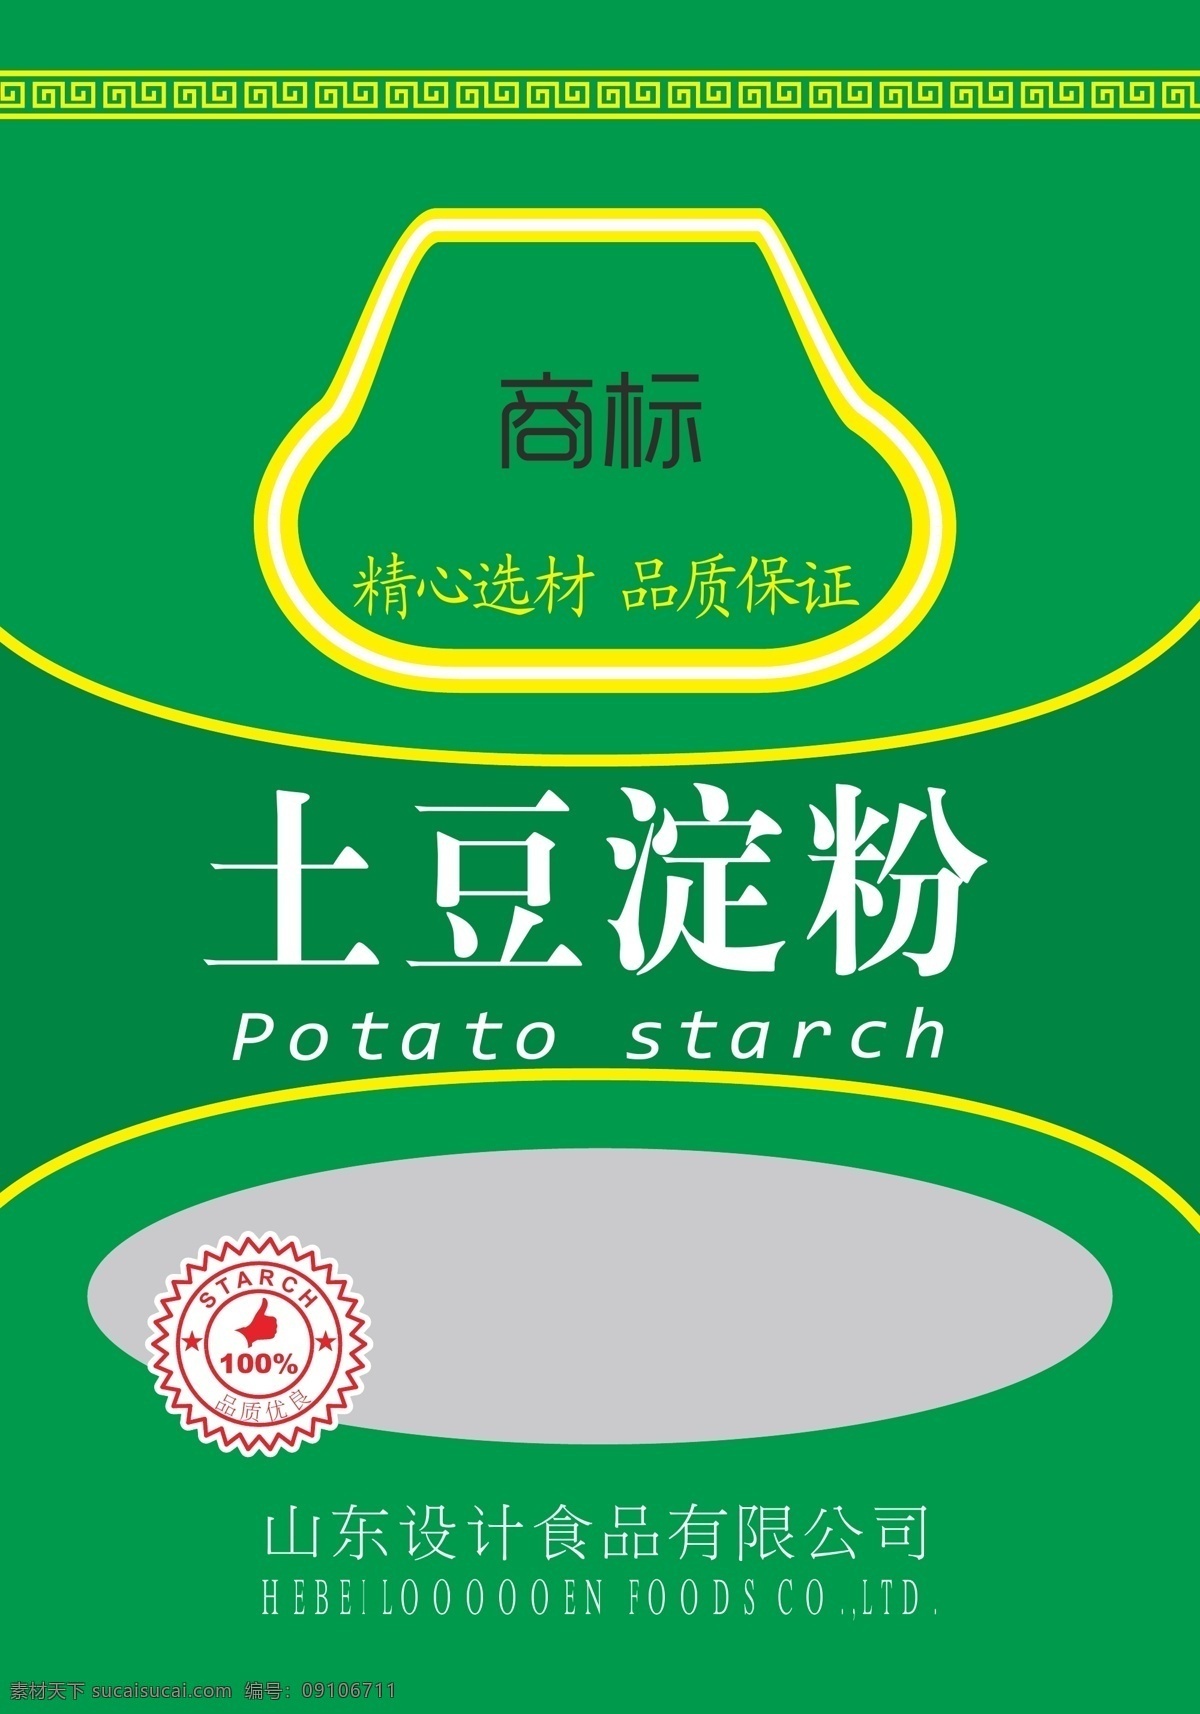 土豆淀粉 土豆包装 矢量 食品袋 cs6 淀粉 圆标 包装设计